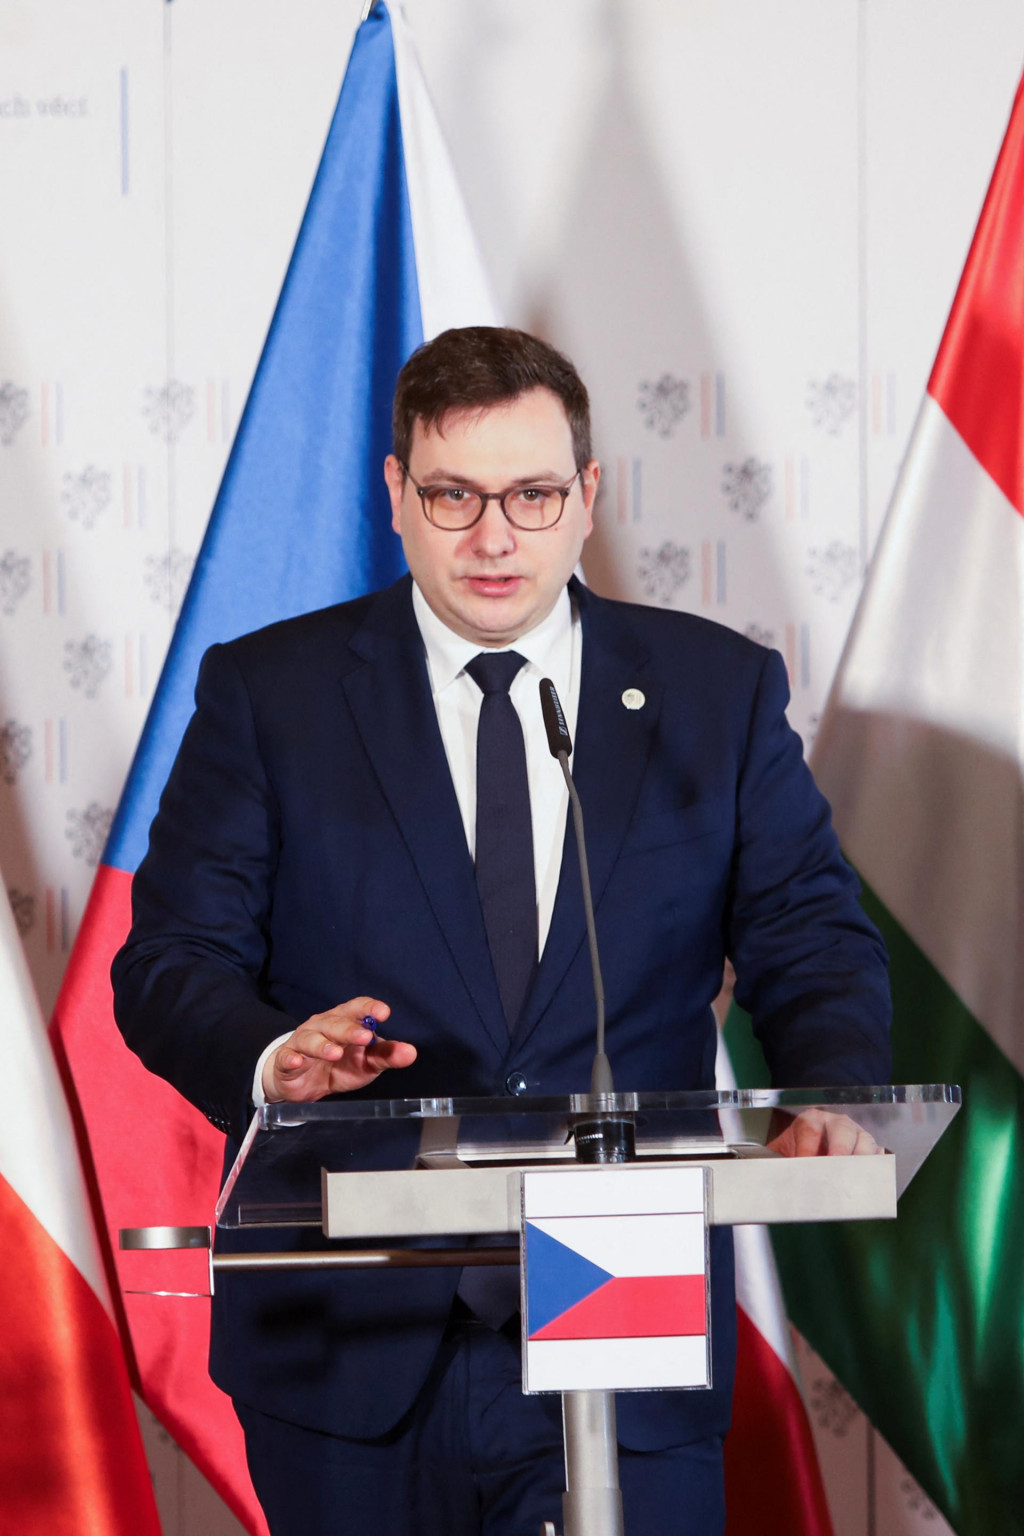 Šéf českej diplomacie Jan Lipavský. FOTO: Reuters